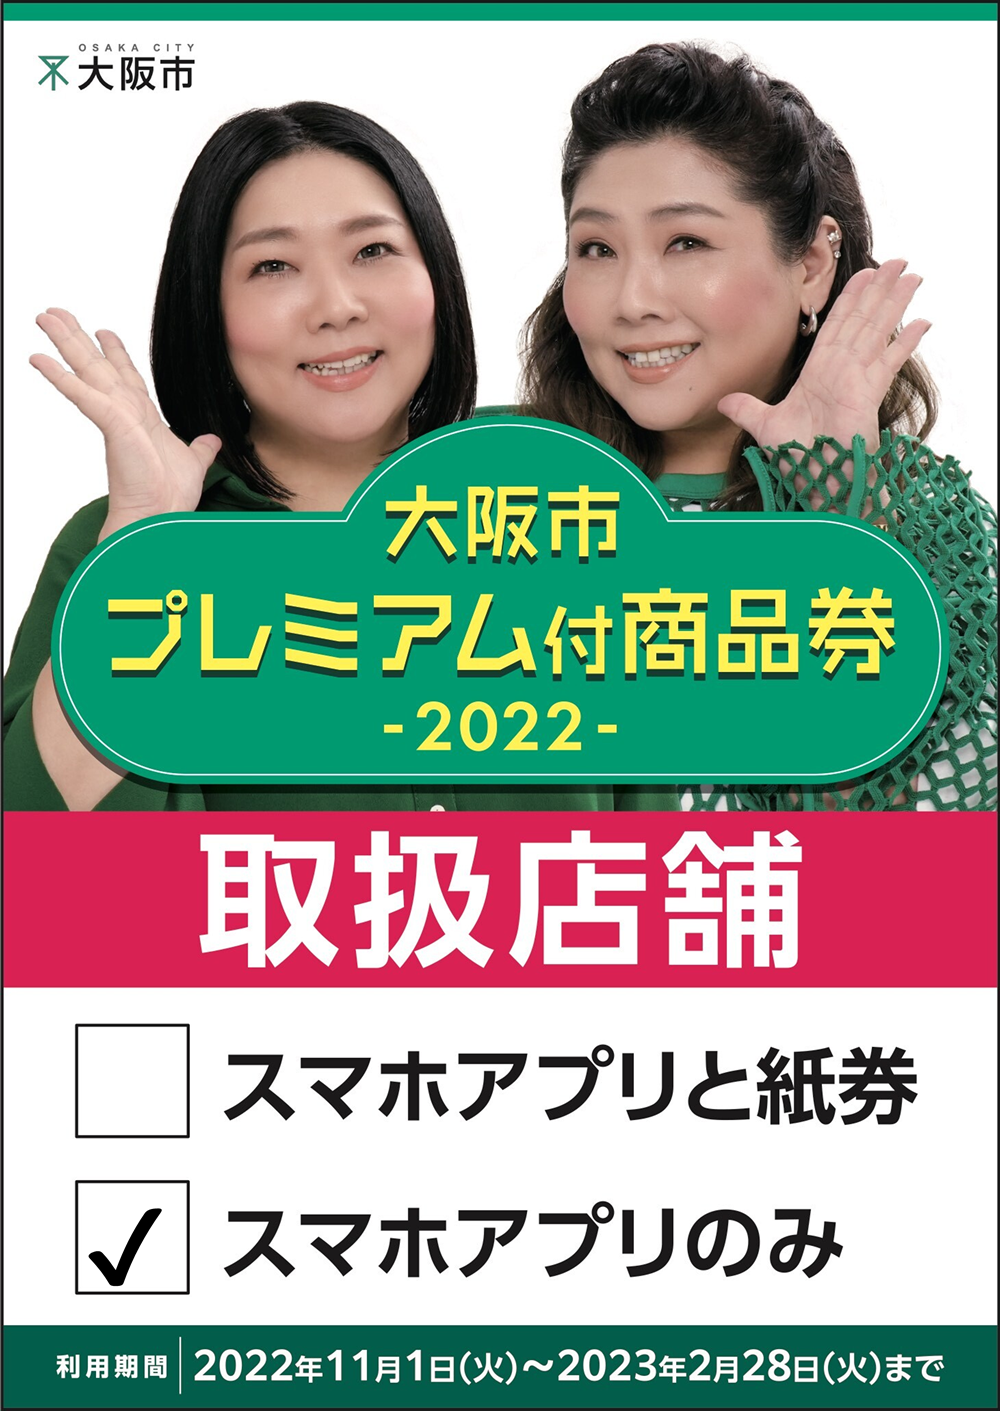 「大阪市プレミアム付商品券2022」をご利用いただけます。